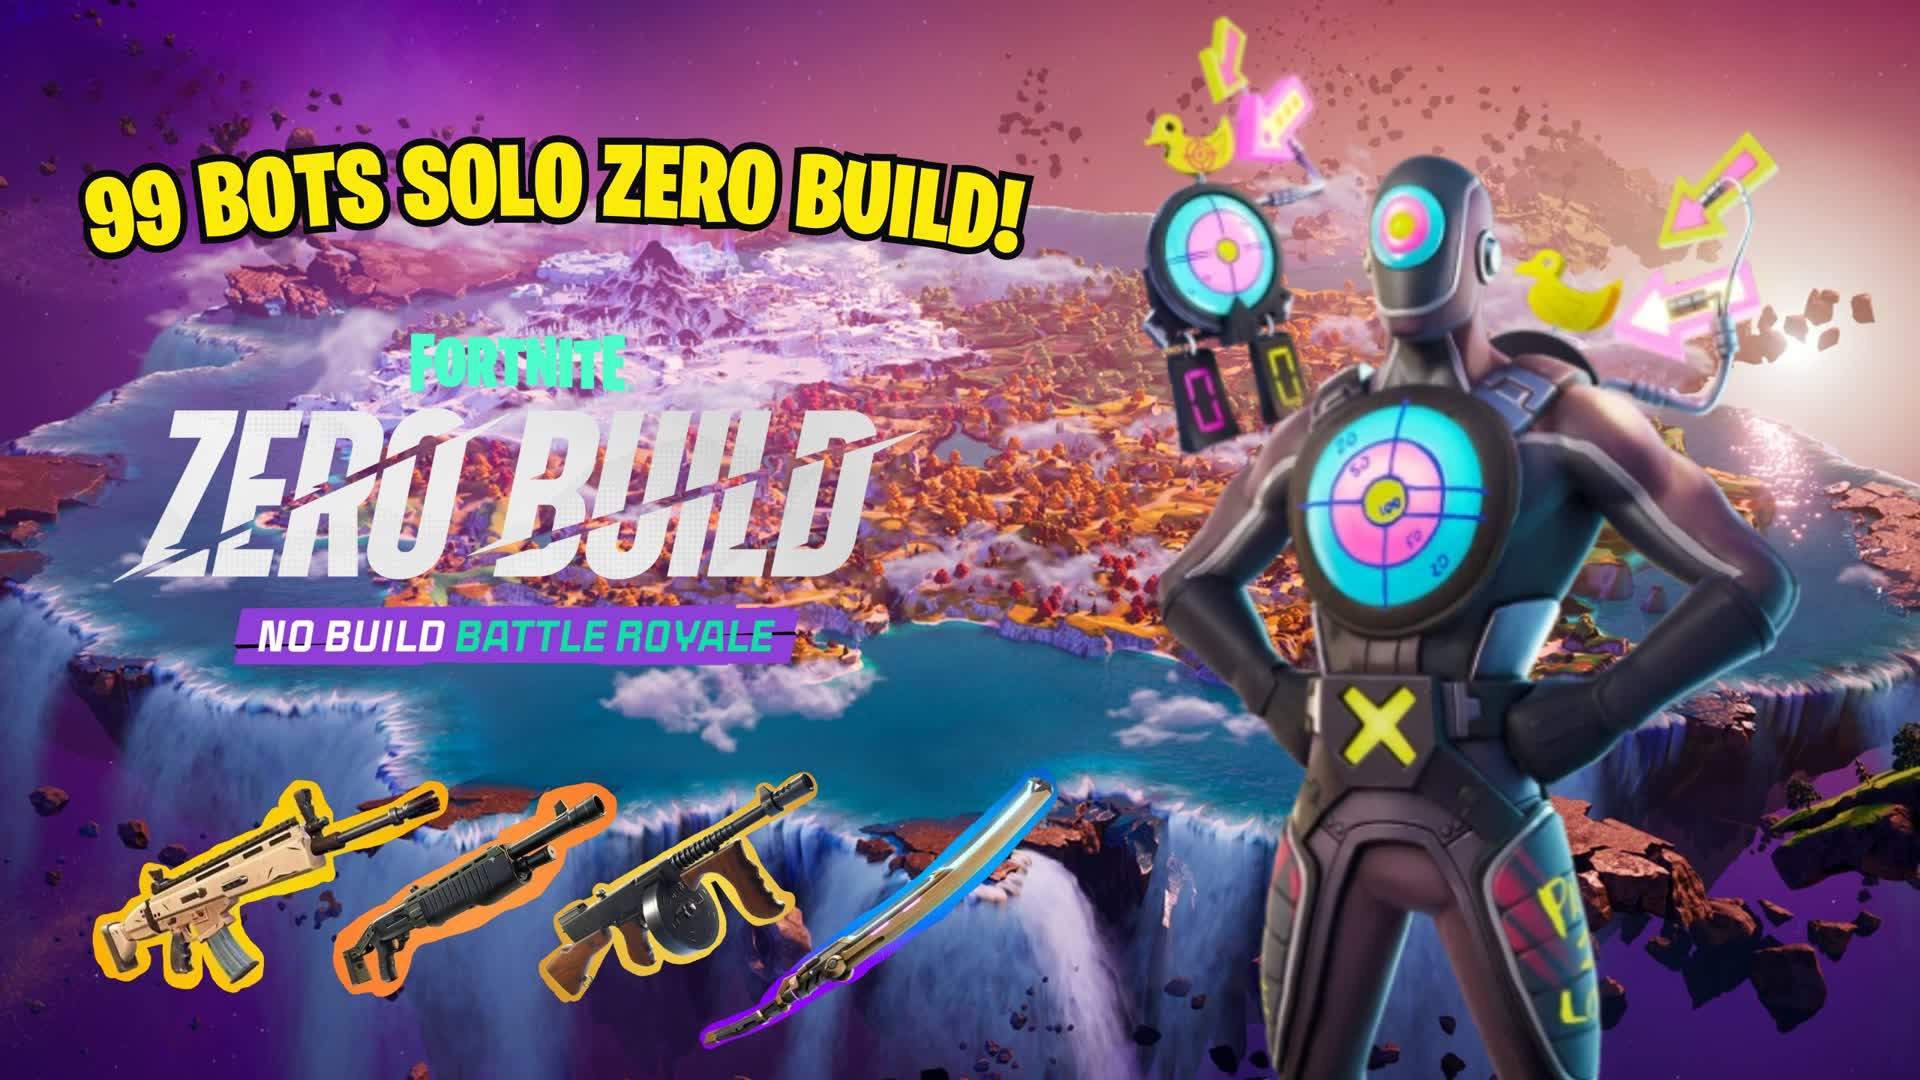 BR SOLO ZERO BUILD 99 BOTS AI PRACTICE